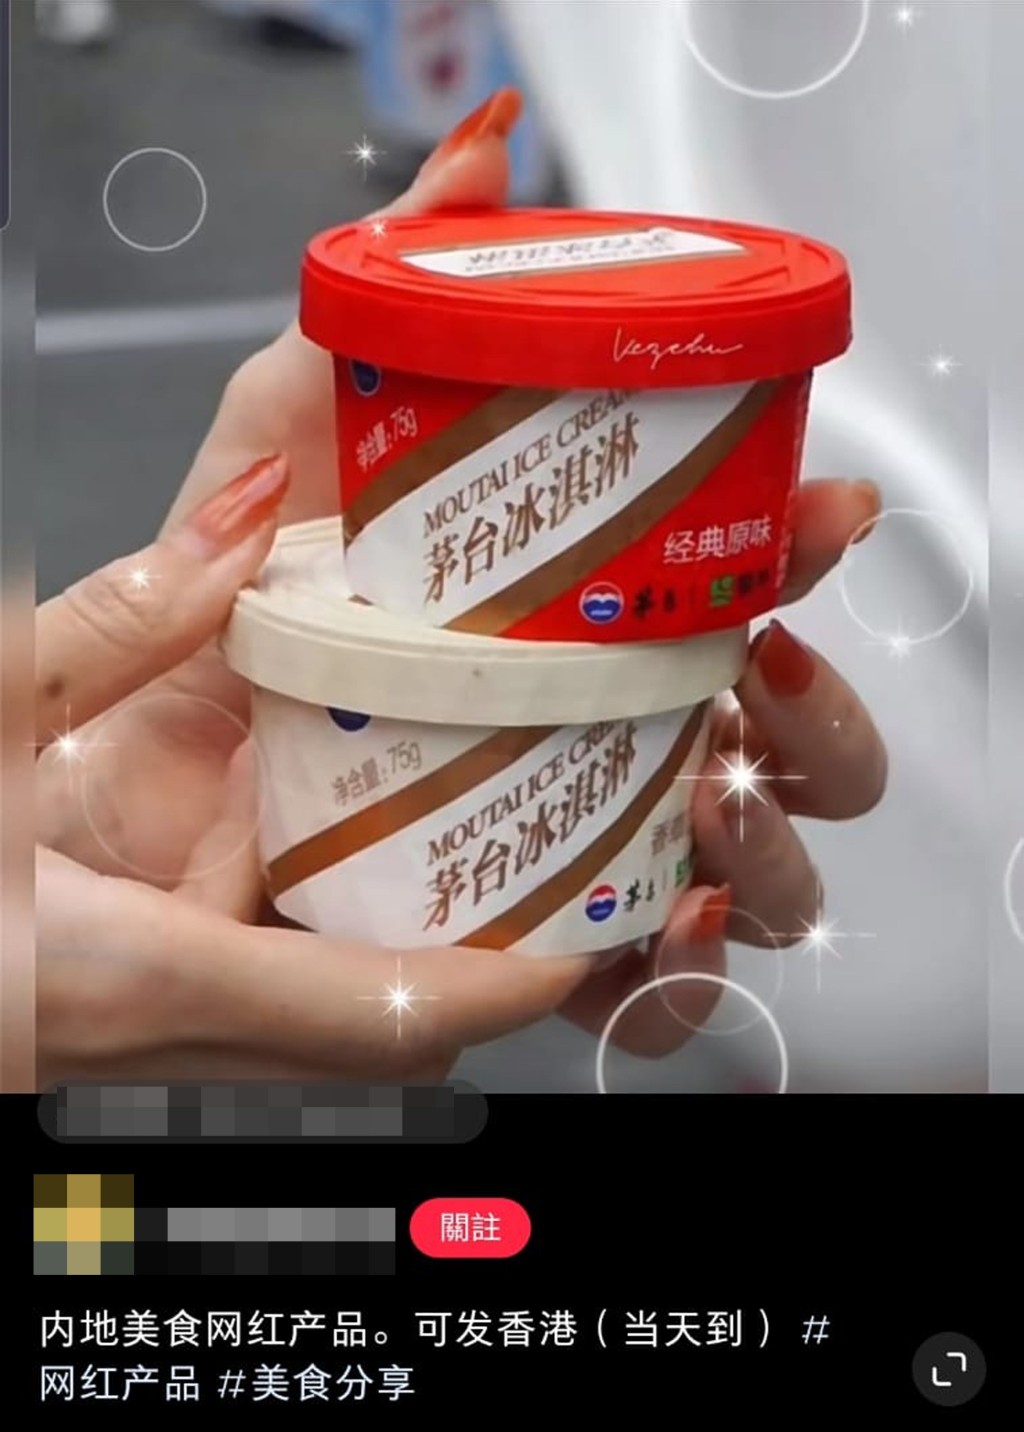  有公司稱可速遞內地網紅美食──茅台冰淇淋。  網上圖片